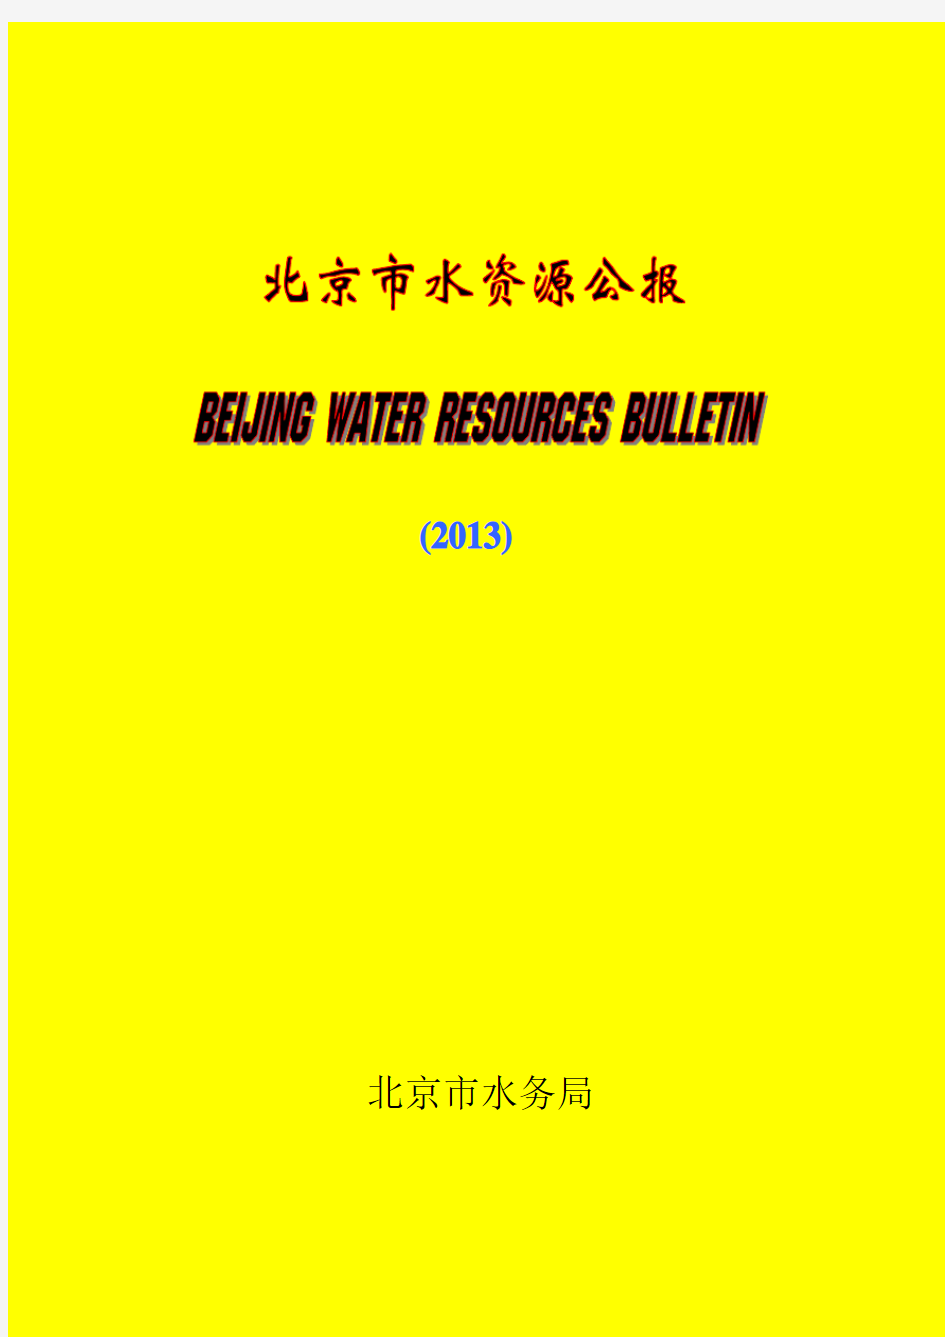 2013年北京市水资源公报